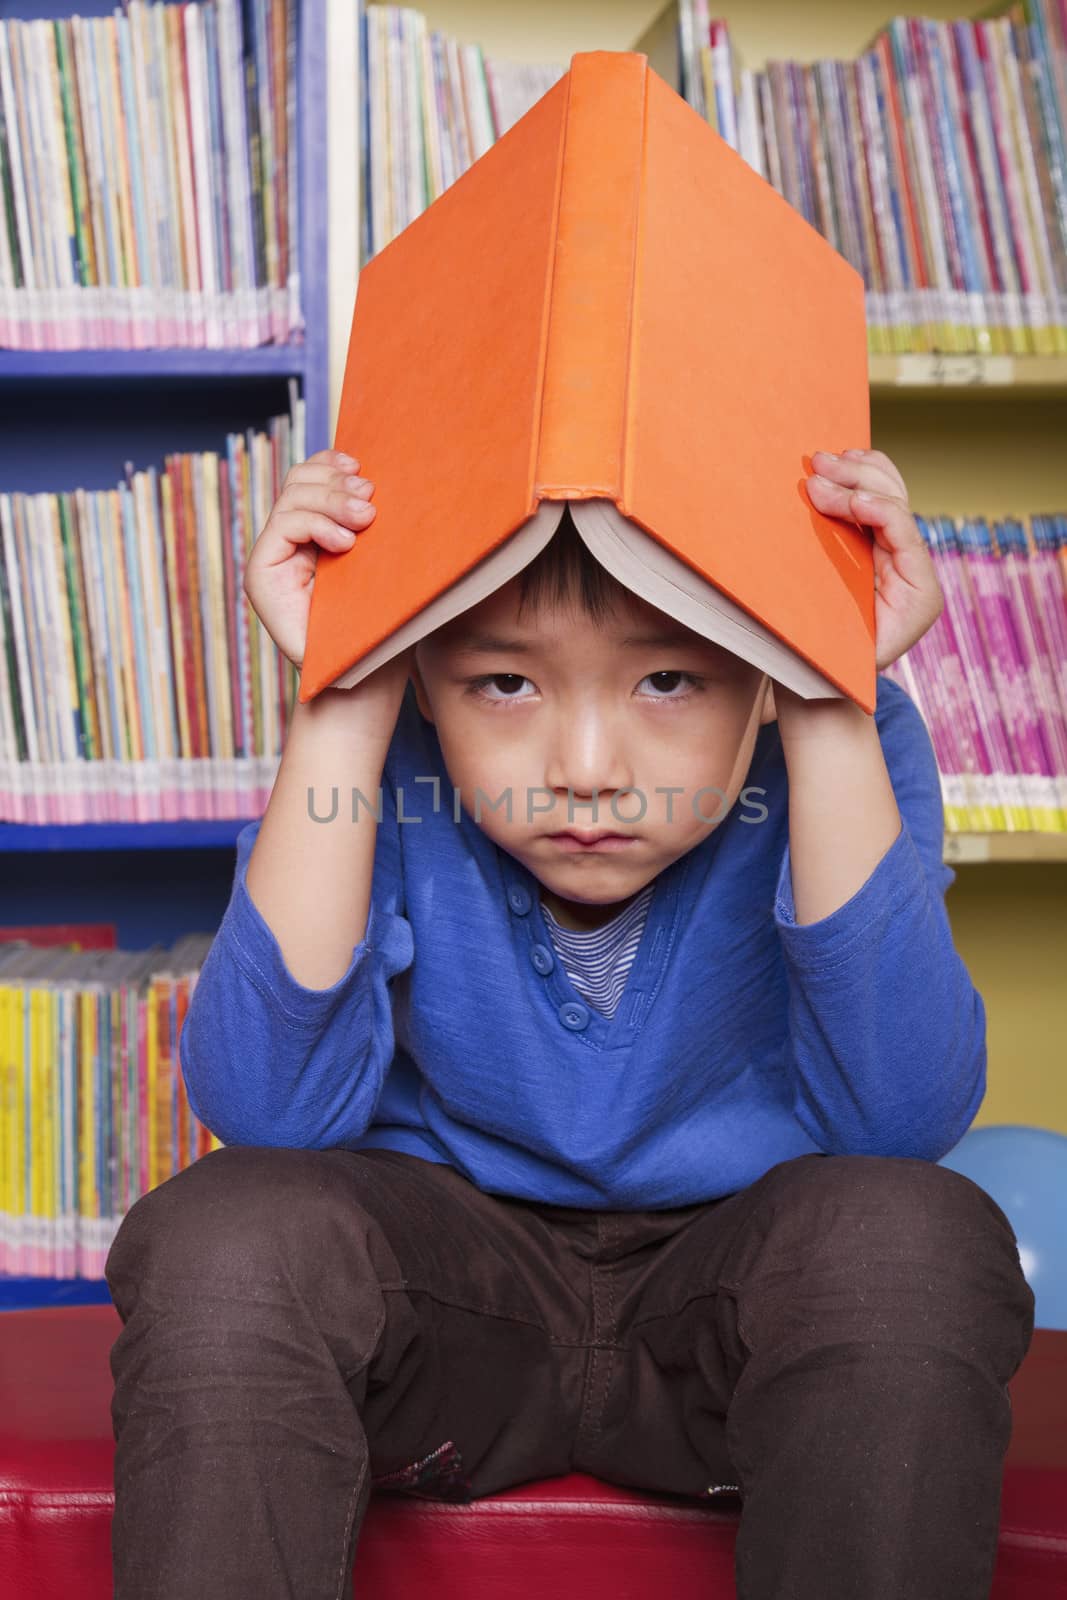 Unhappy Boy with Book